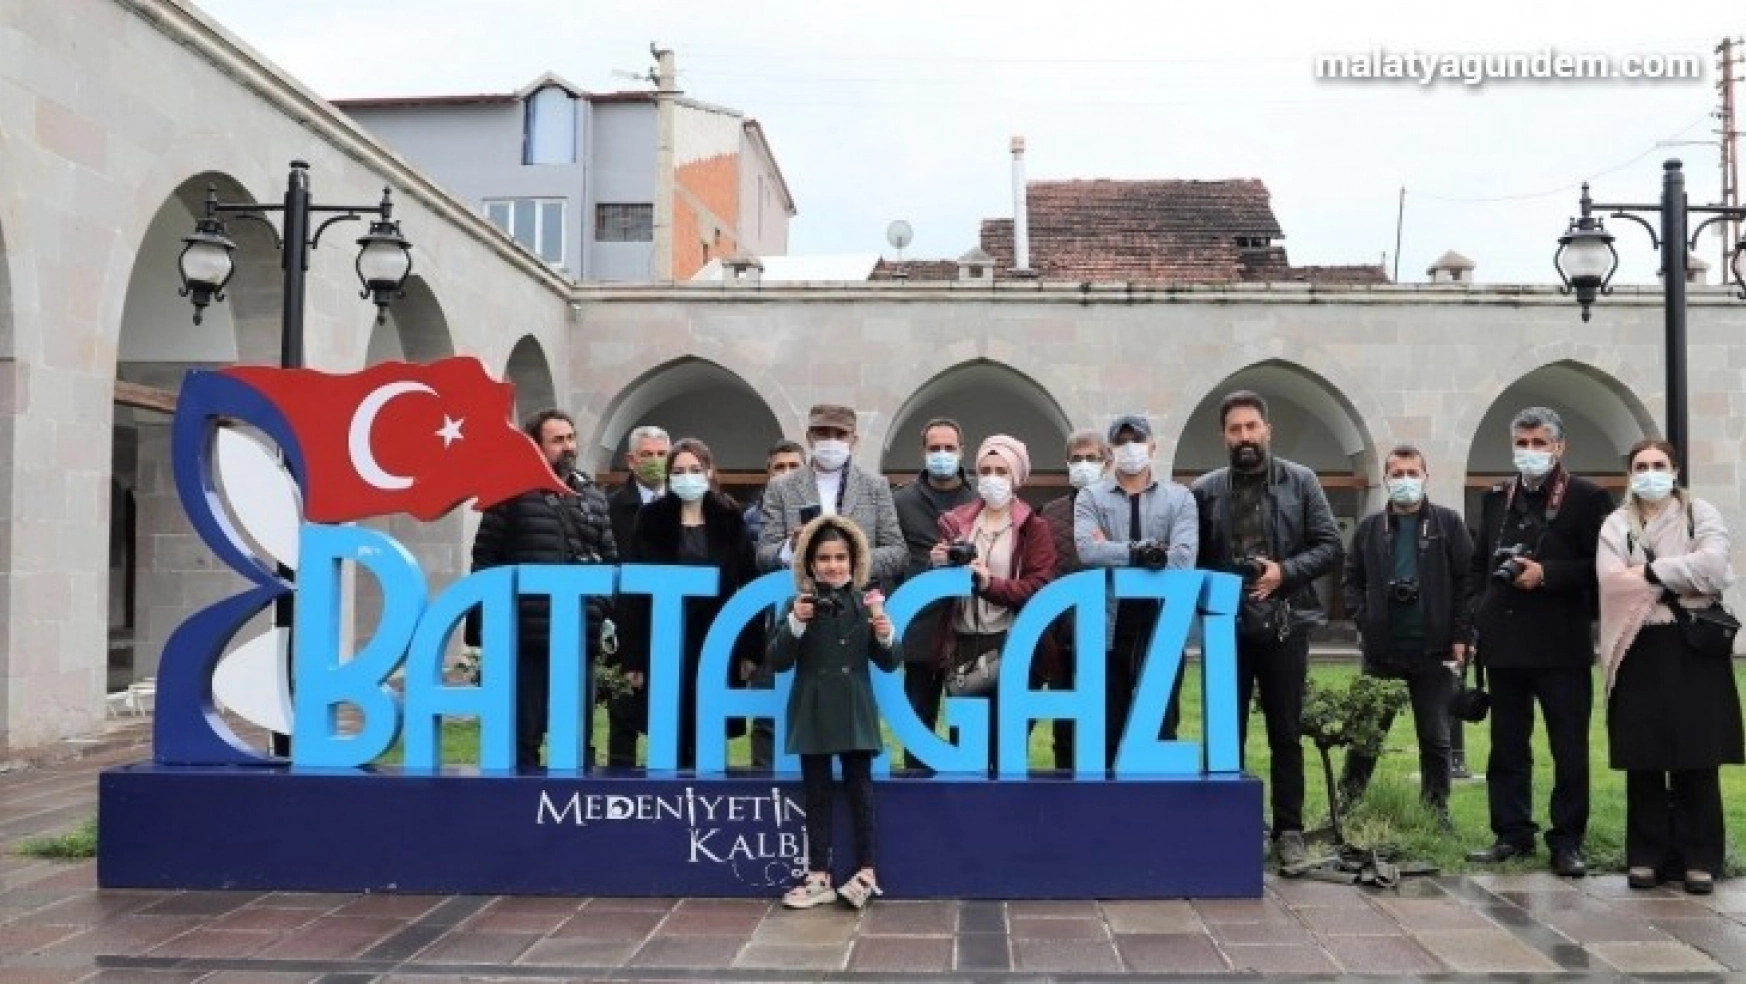 Öğretmenler medeniyetin kalbi Battalgazi'yi fotoğrafladı